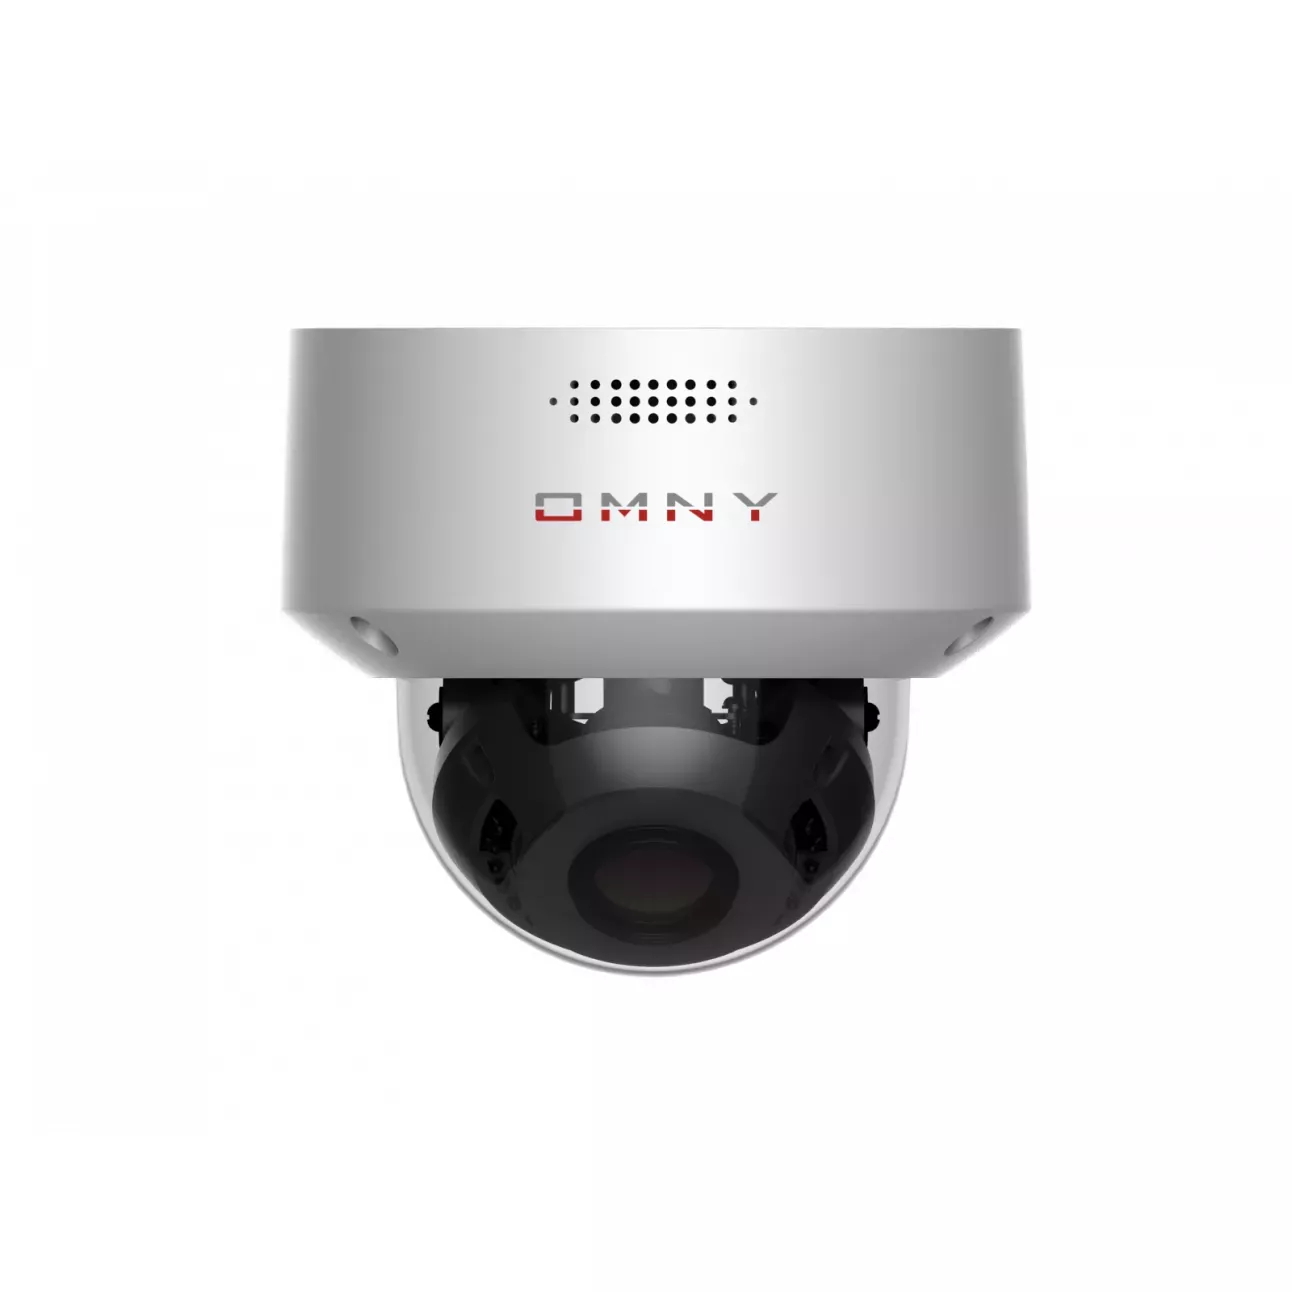 IP камера OMNY PRO M2L2F 27135 купольная 2Мп (1920х1080) 30к/с, 2.7-13.5мм мотор, F1.6, EasyMic, аудиовых., встр.микр., 802.3af A/B, 12±1В DC